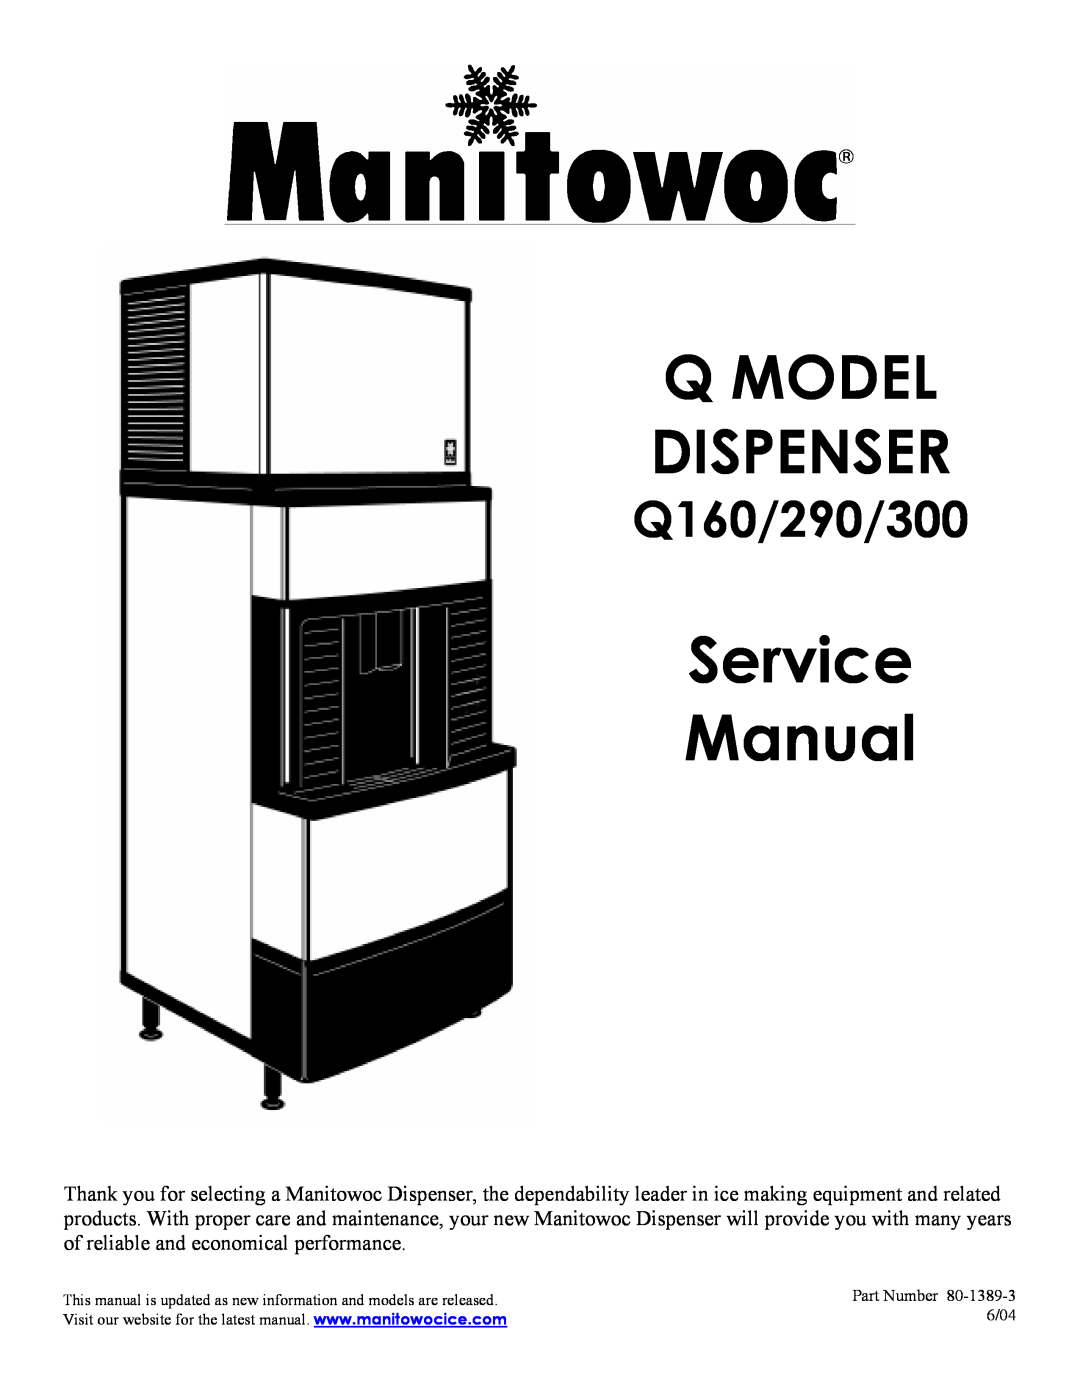 Manitowoc Ice Q290, Q300 service manual Q Model Dispenser, Q160/290/300 